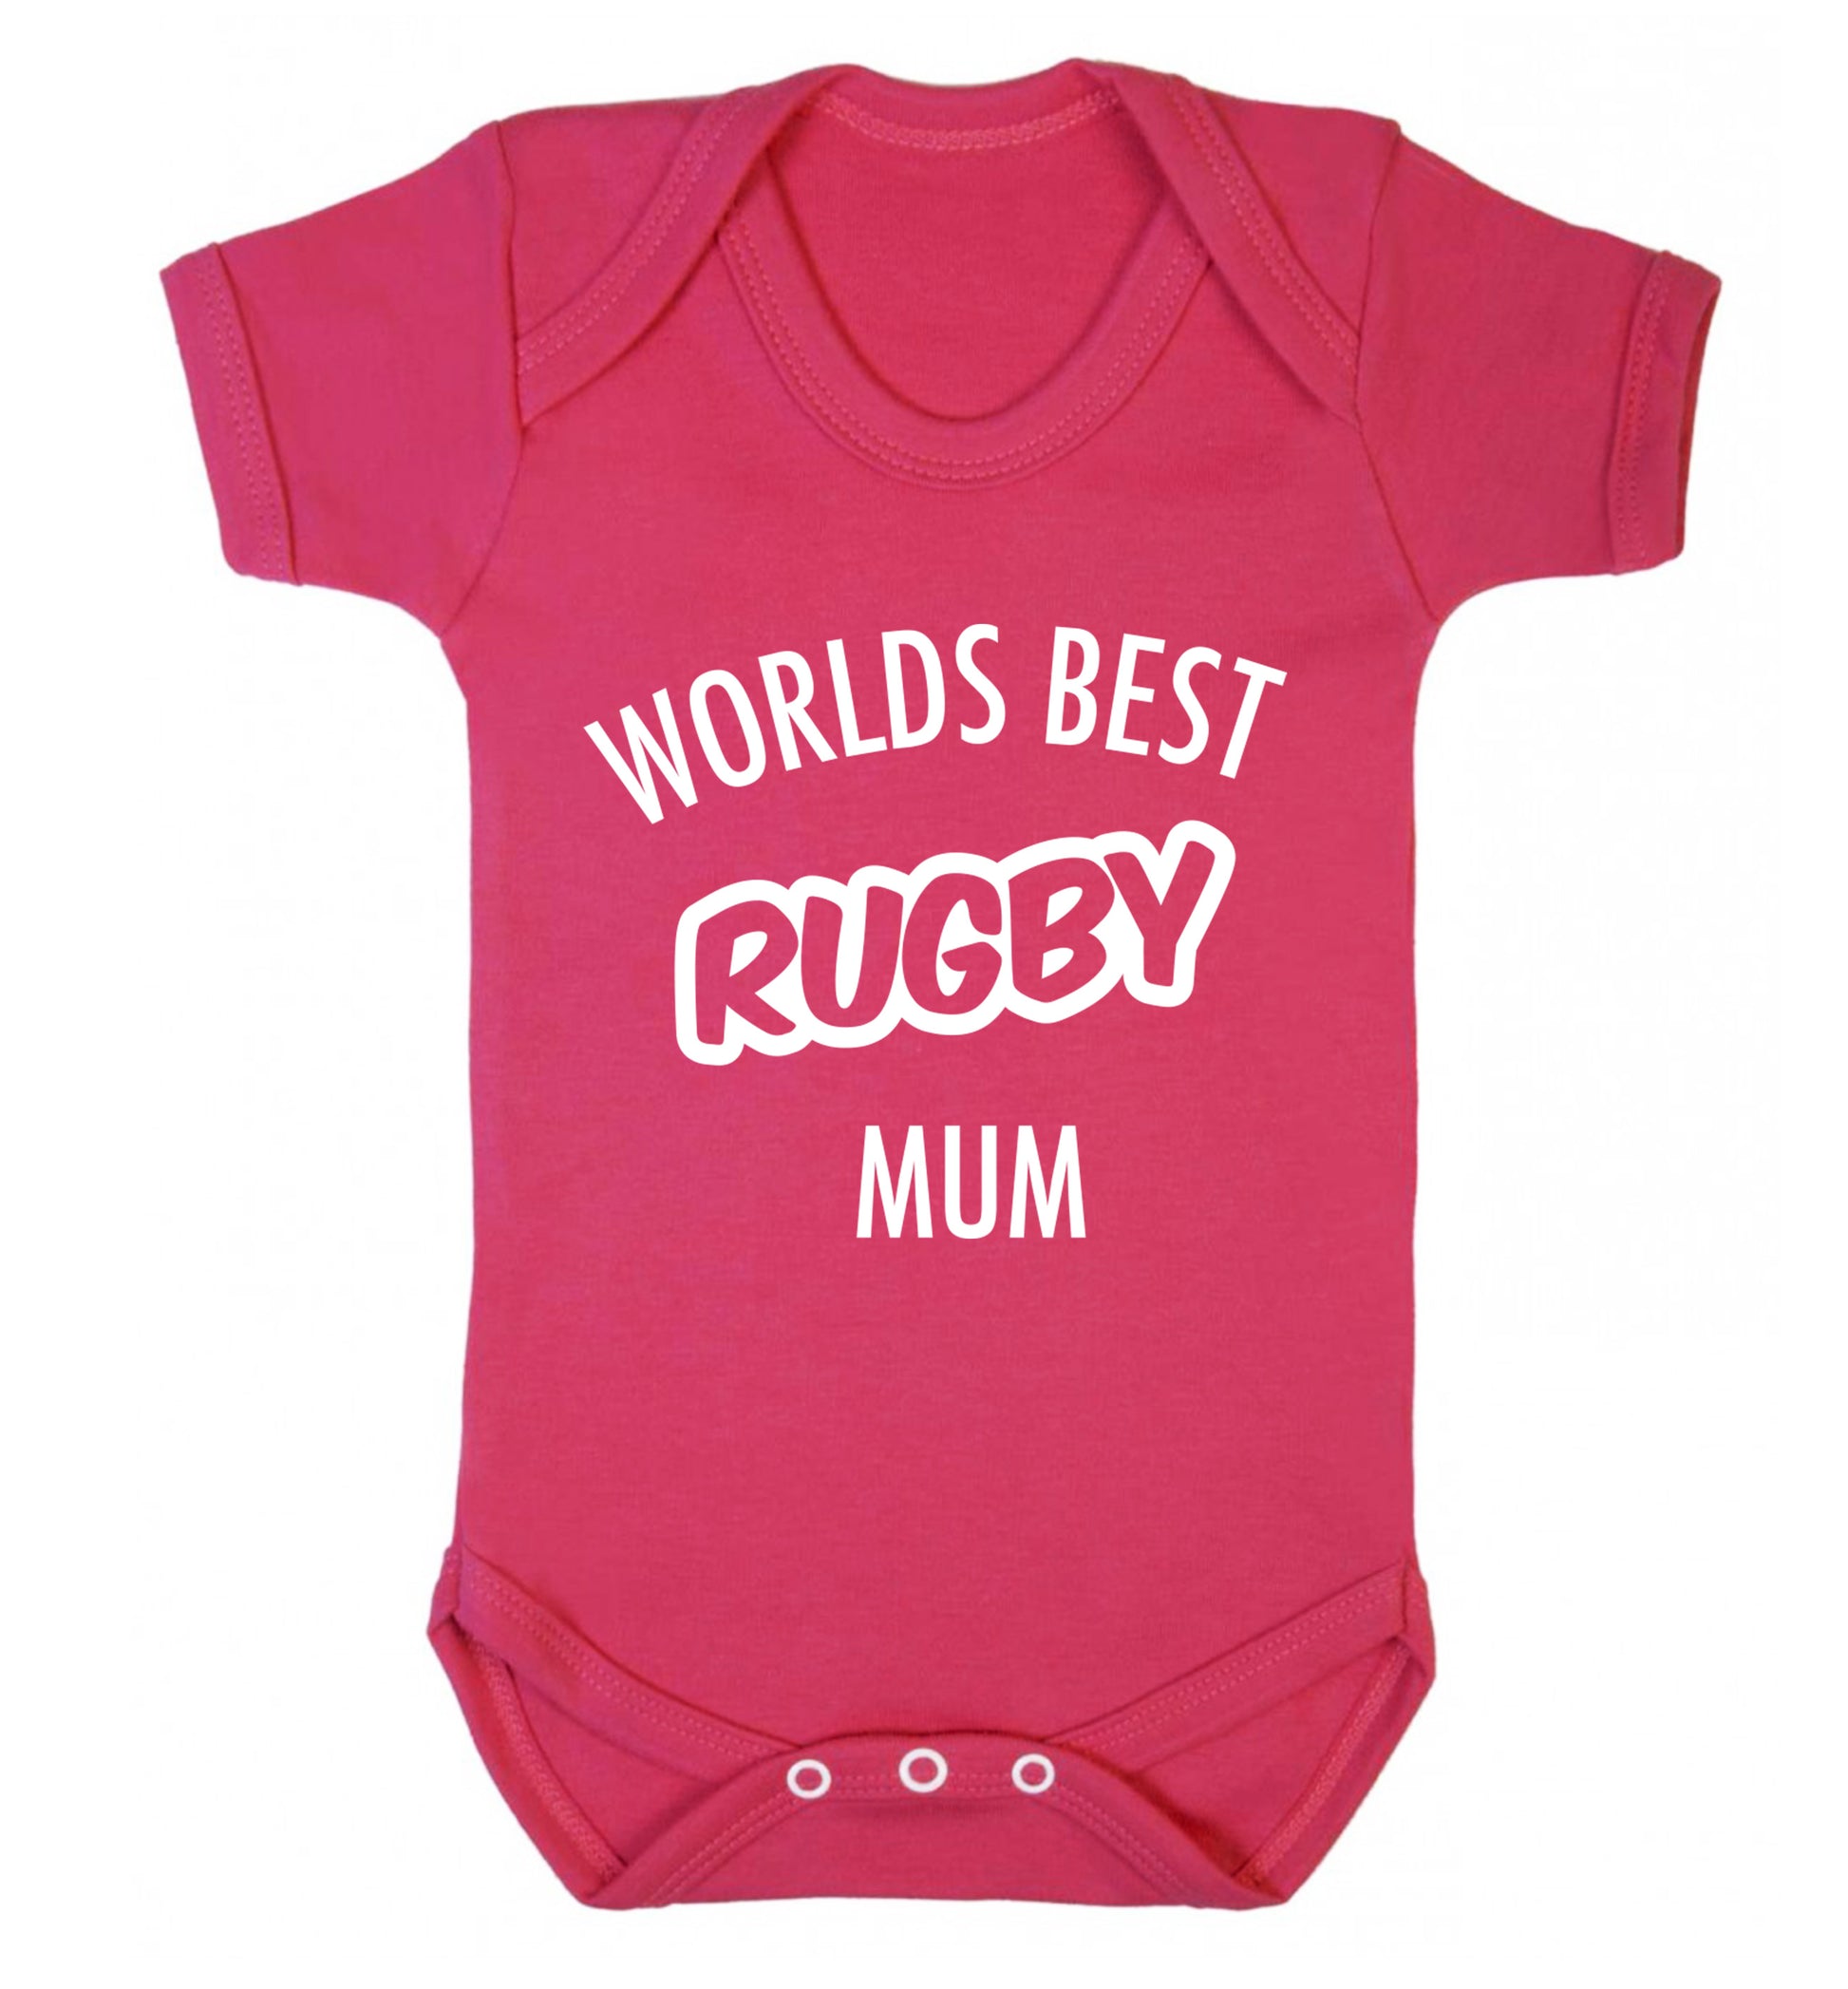 Worlds best rugby mum Baby Vest dark pink 18-24 months